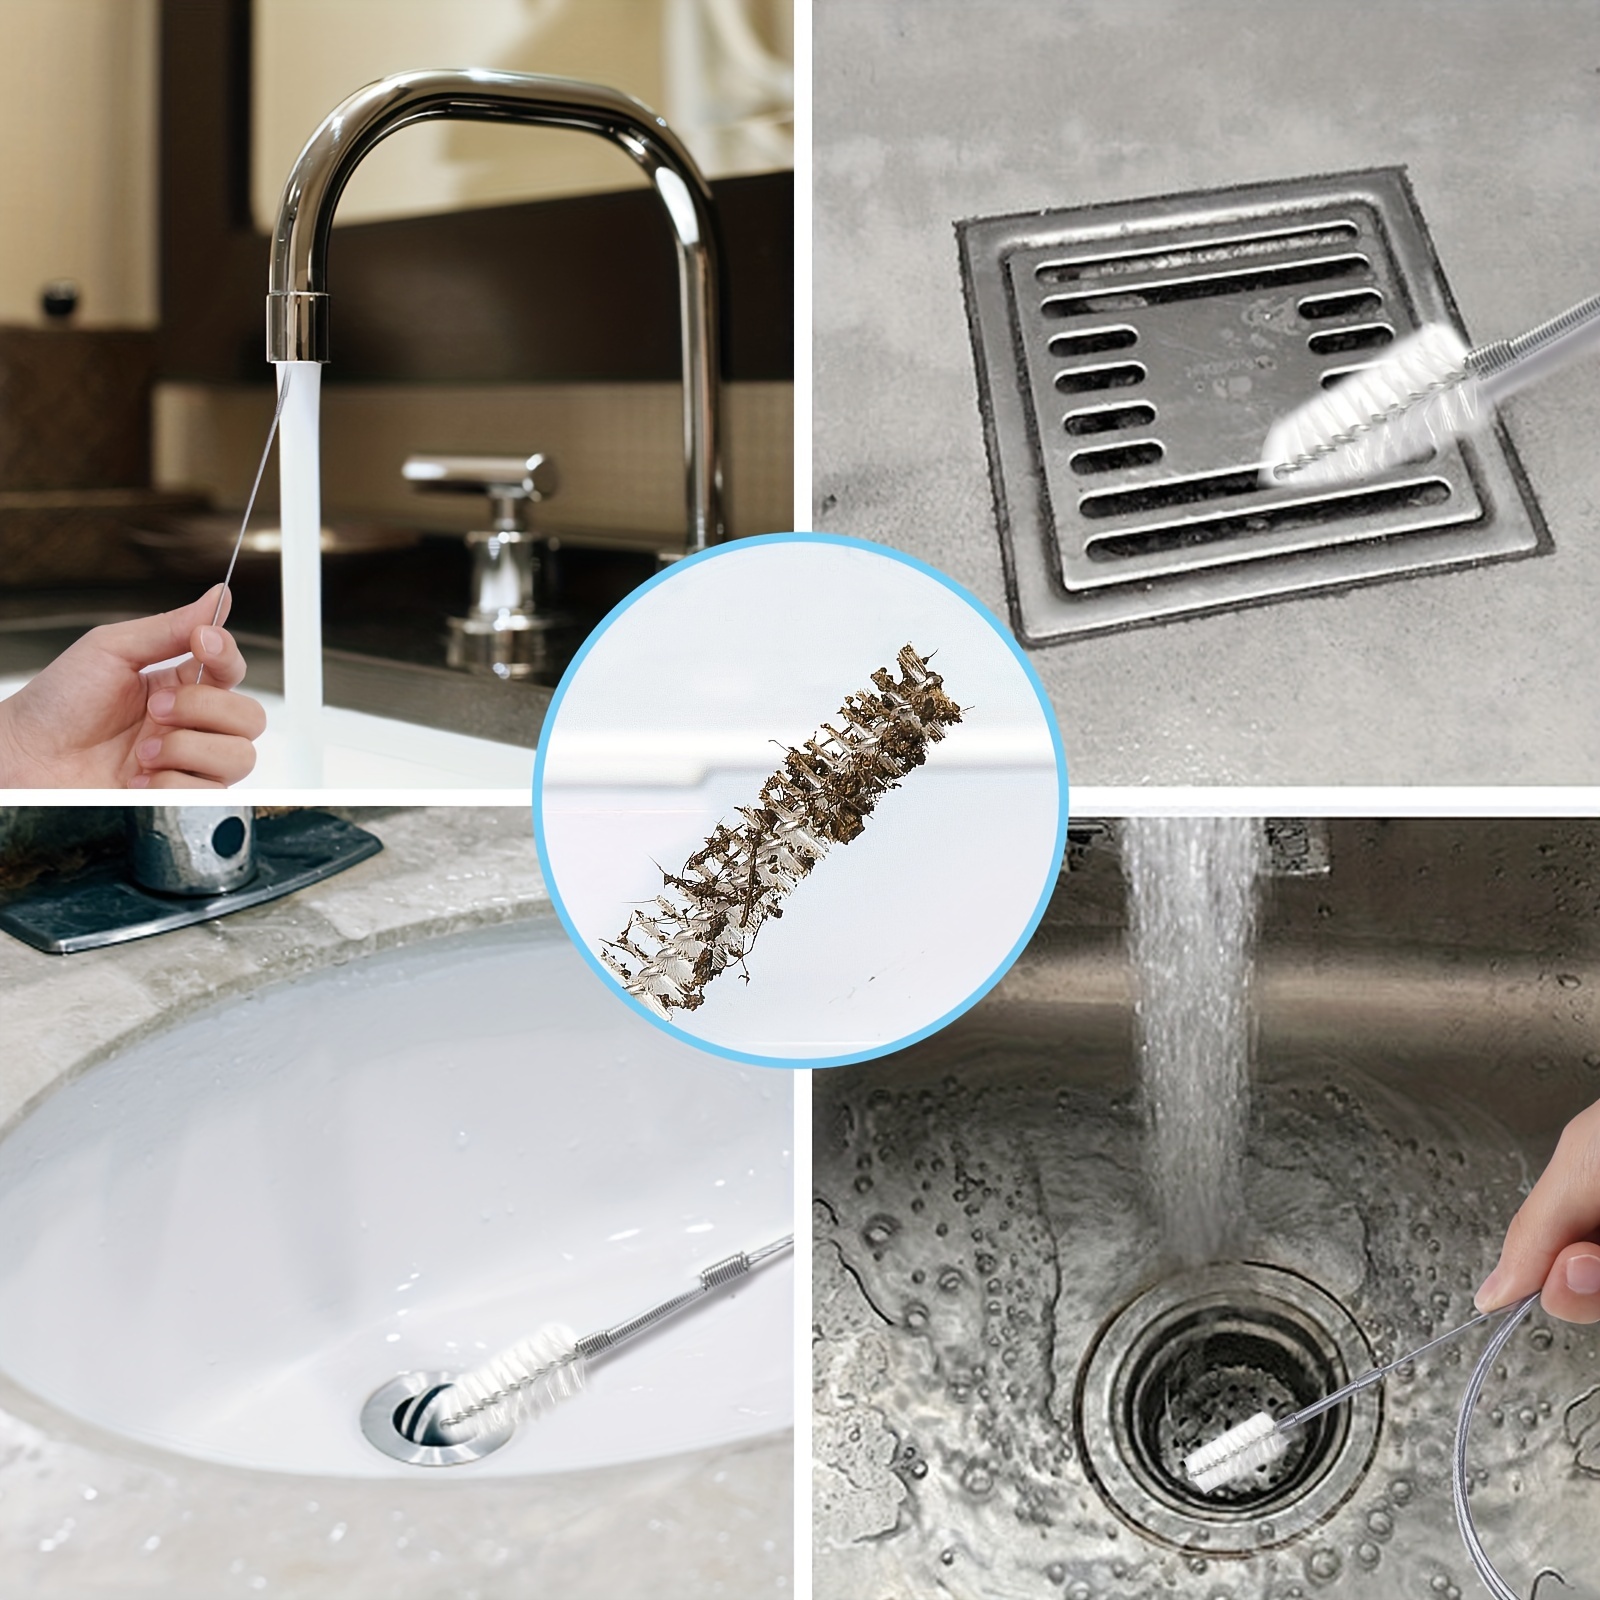 Drain Cleaner Brush - Flexible Thin Long Brush For Clog Free Sinks